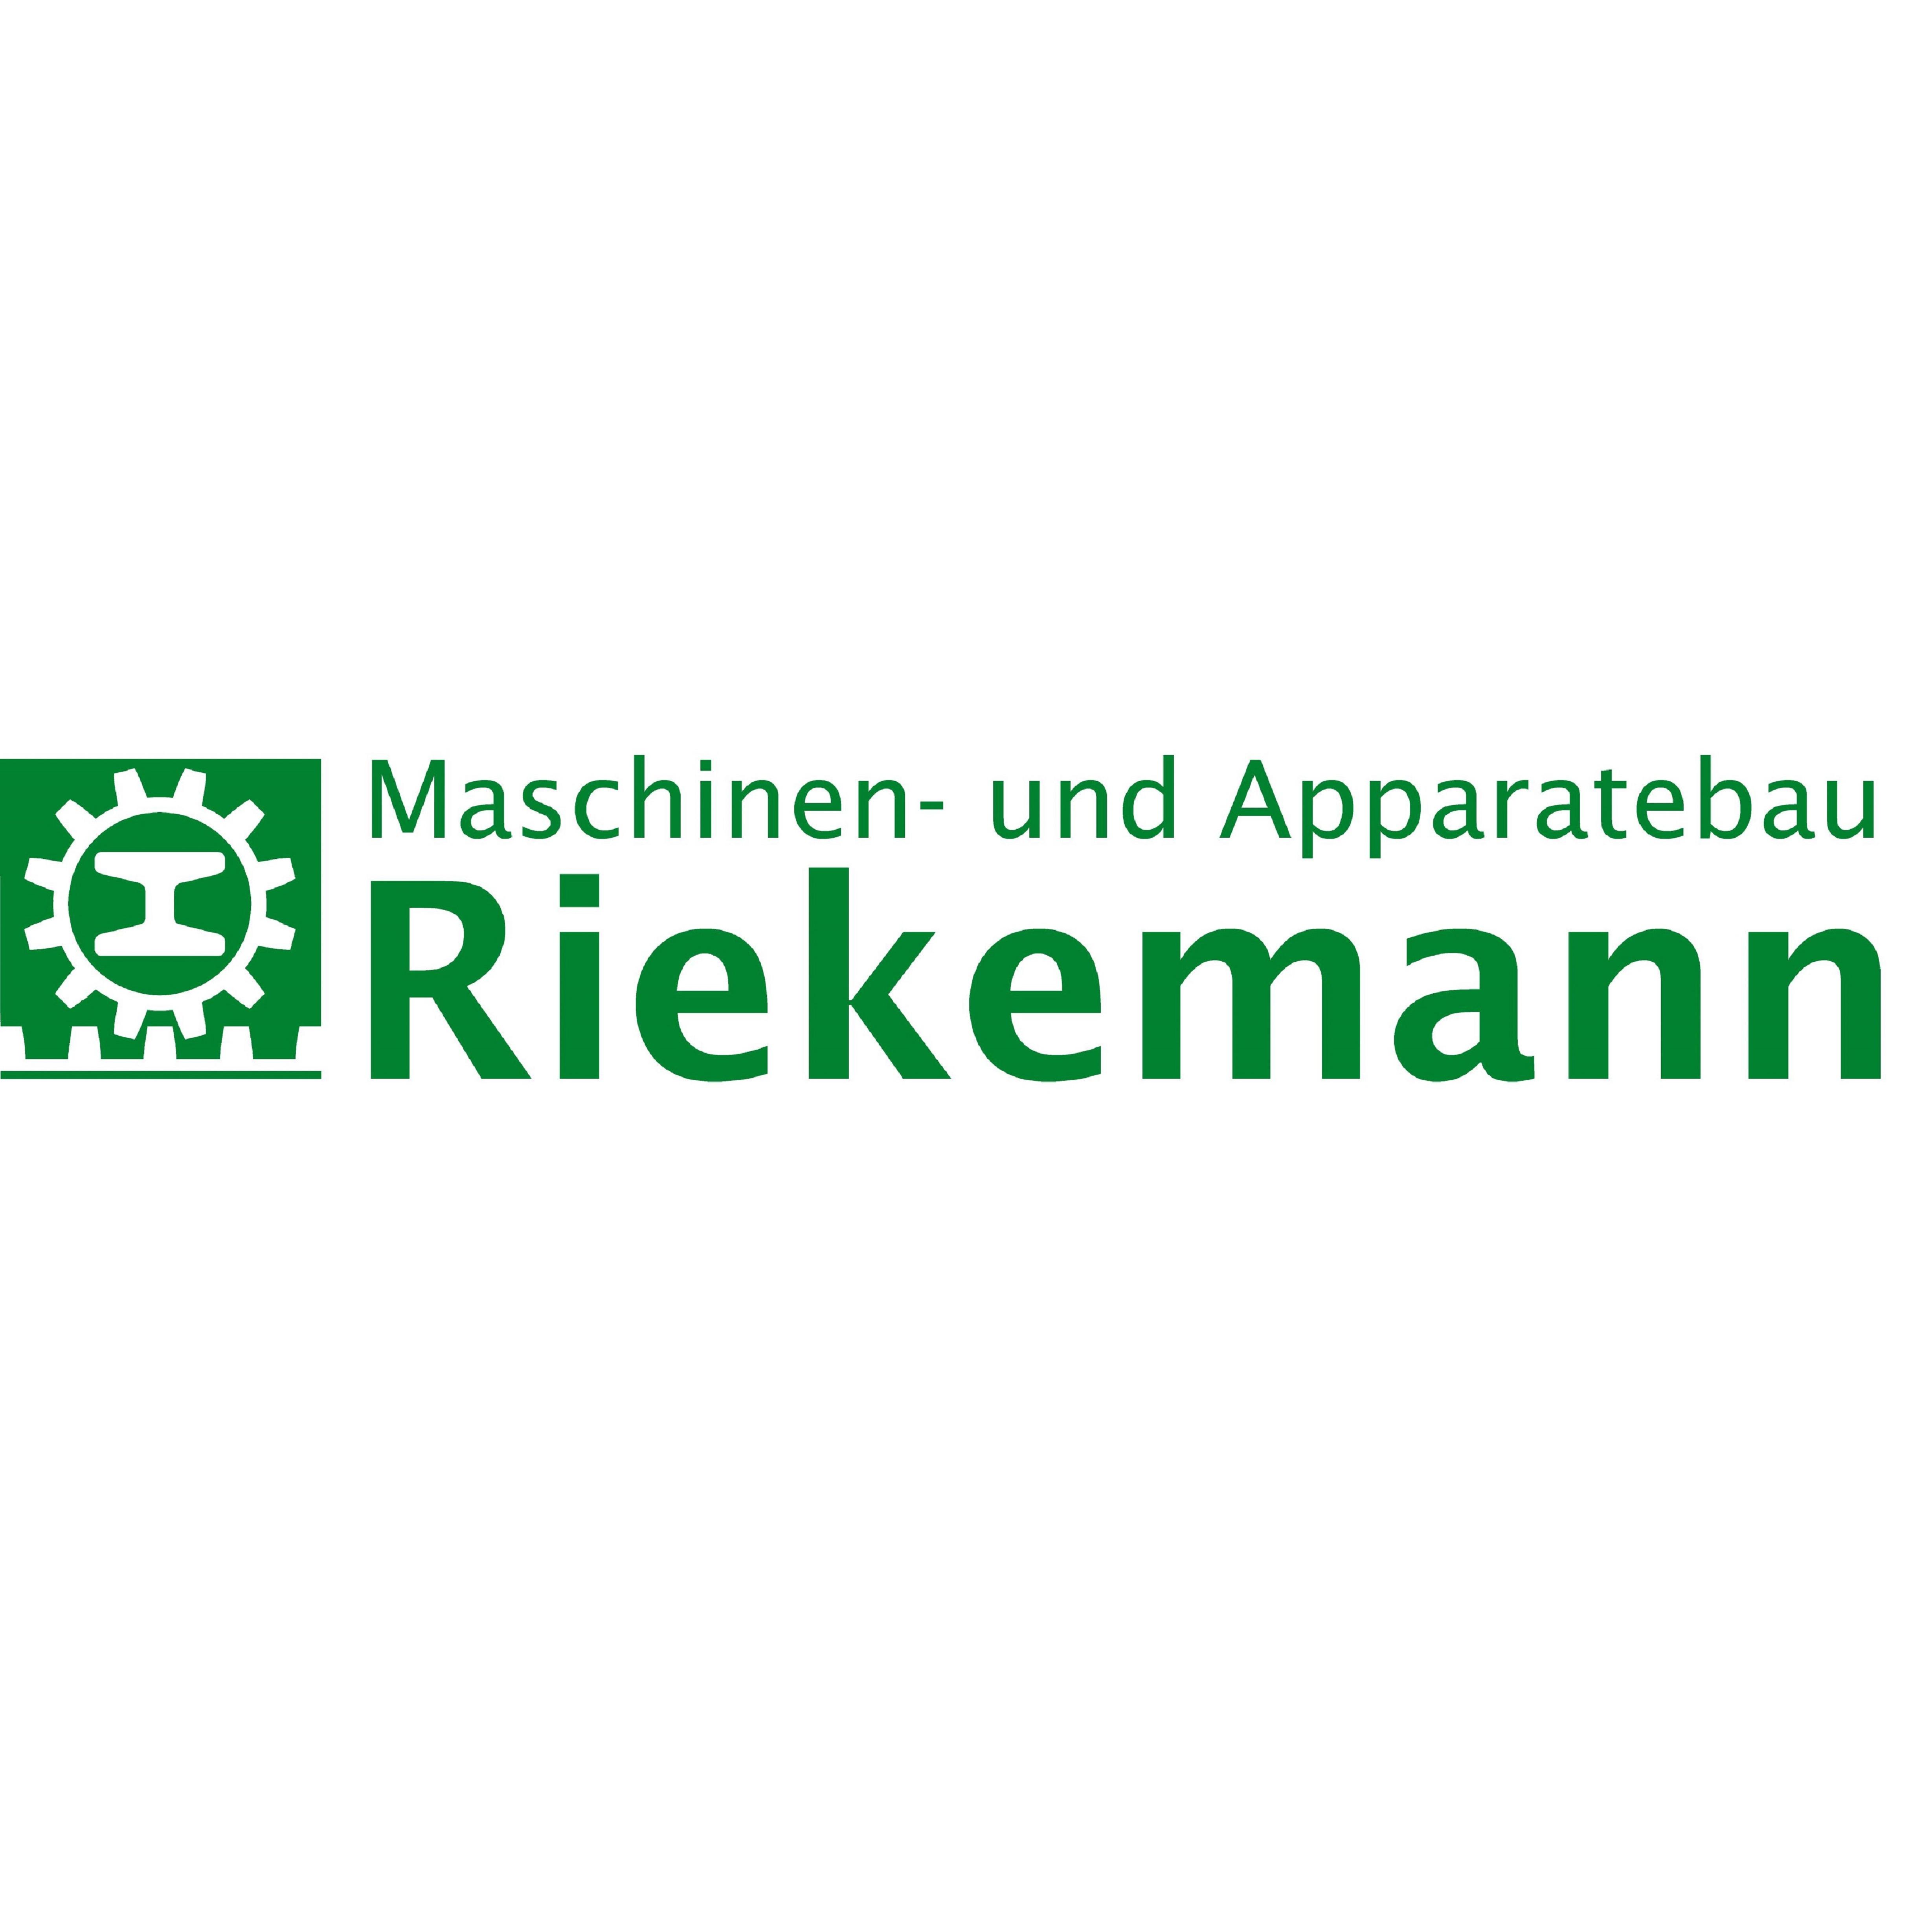 Maschinen- und Apparatebau Riekemann GmbH & Co. KG in Nienburg an der Weser - Logo